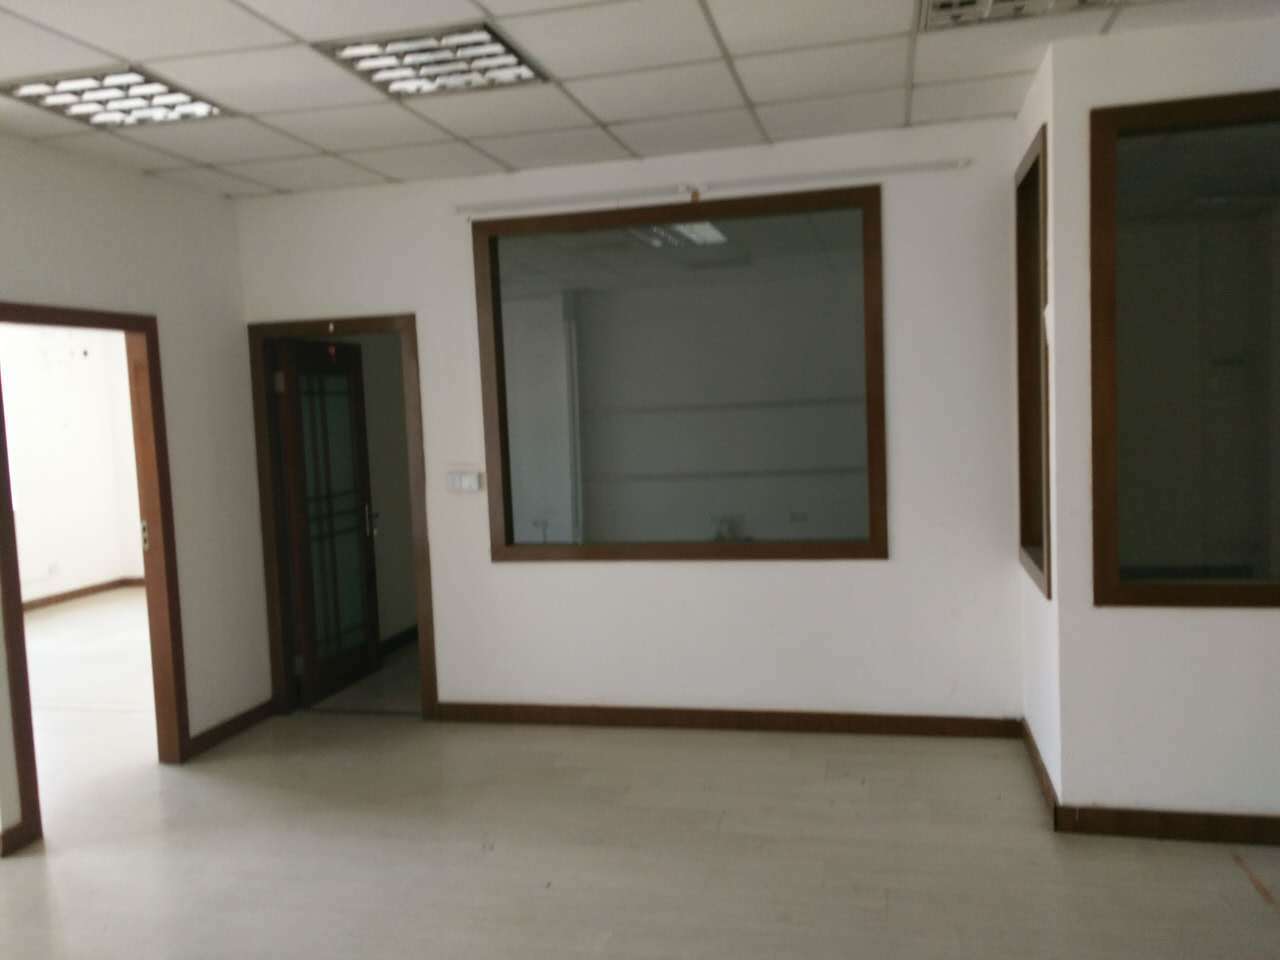 场中钢贸大厦130平米办公室出租-租金价格1.83元/m²/天